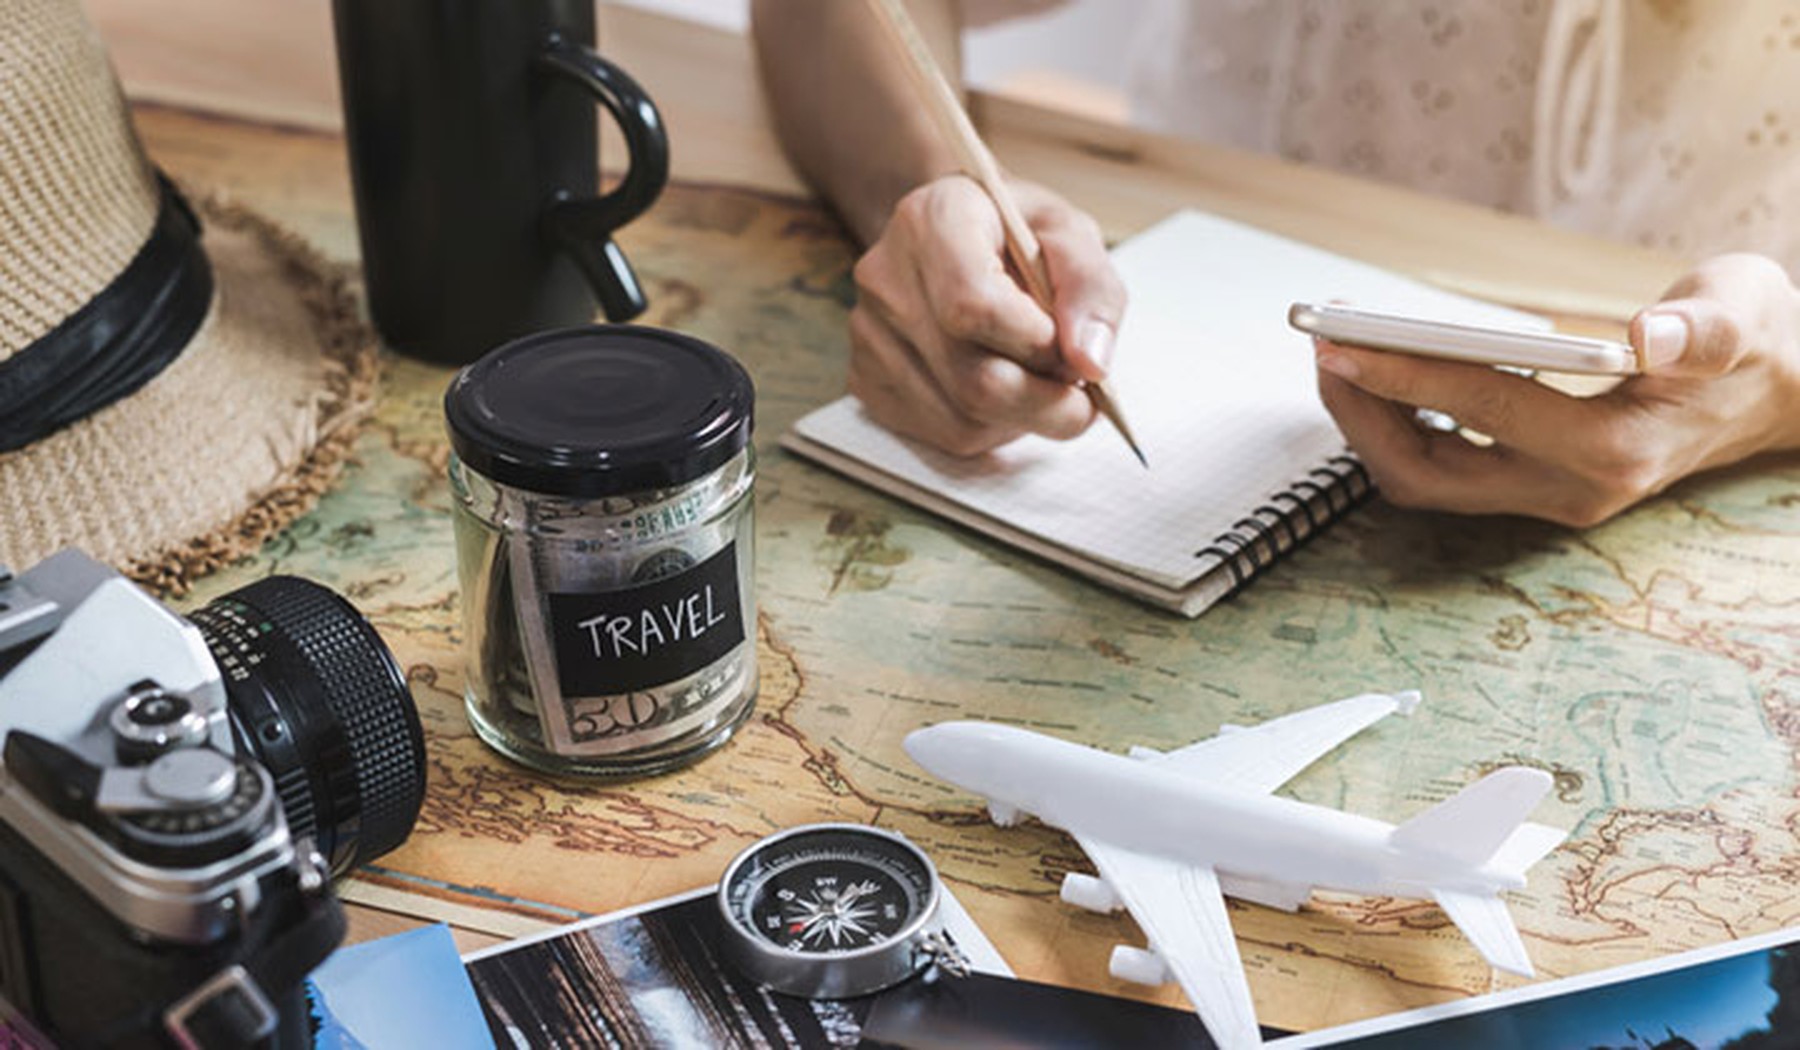 Persona escribiendo en un cuaderno y planeando un viaje sobre un mapa con una maqueta de un avión y sus ahorros